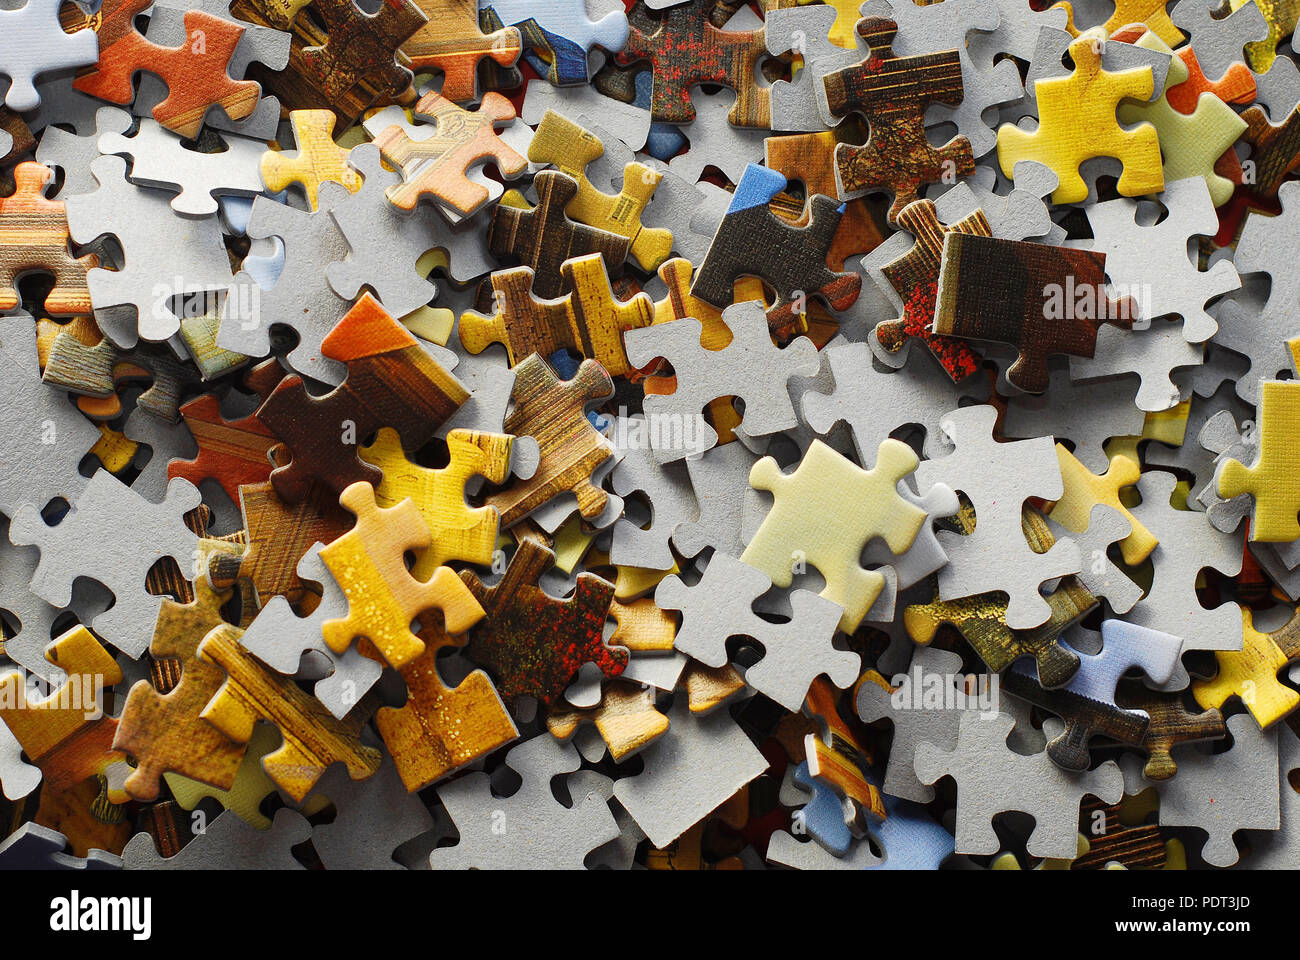 random jigsaw puzzle pieces background Stock Photo - Alamy